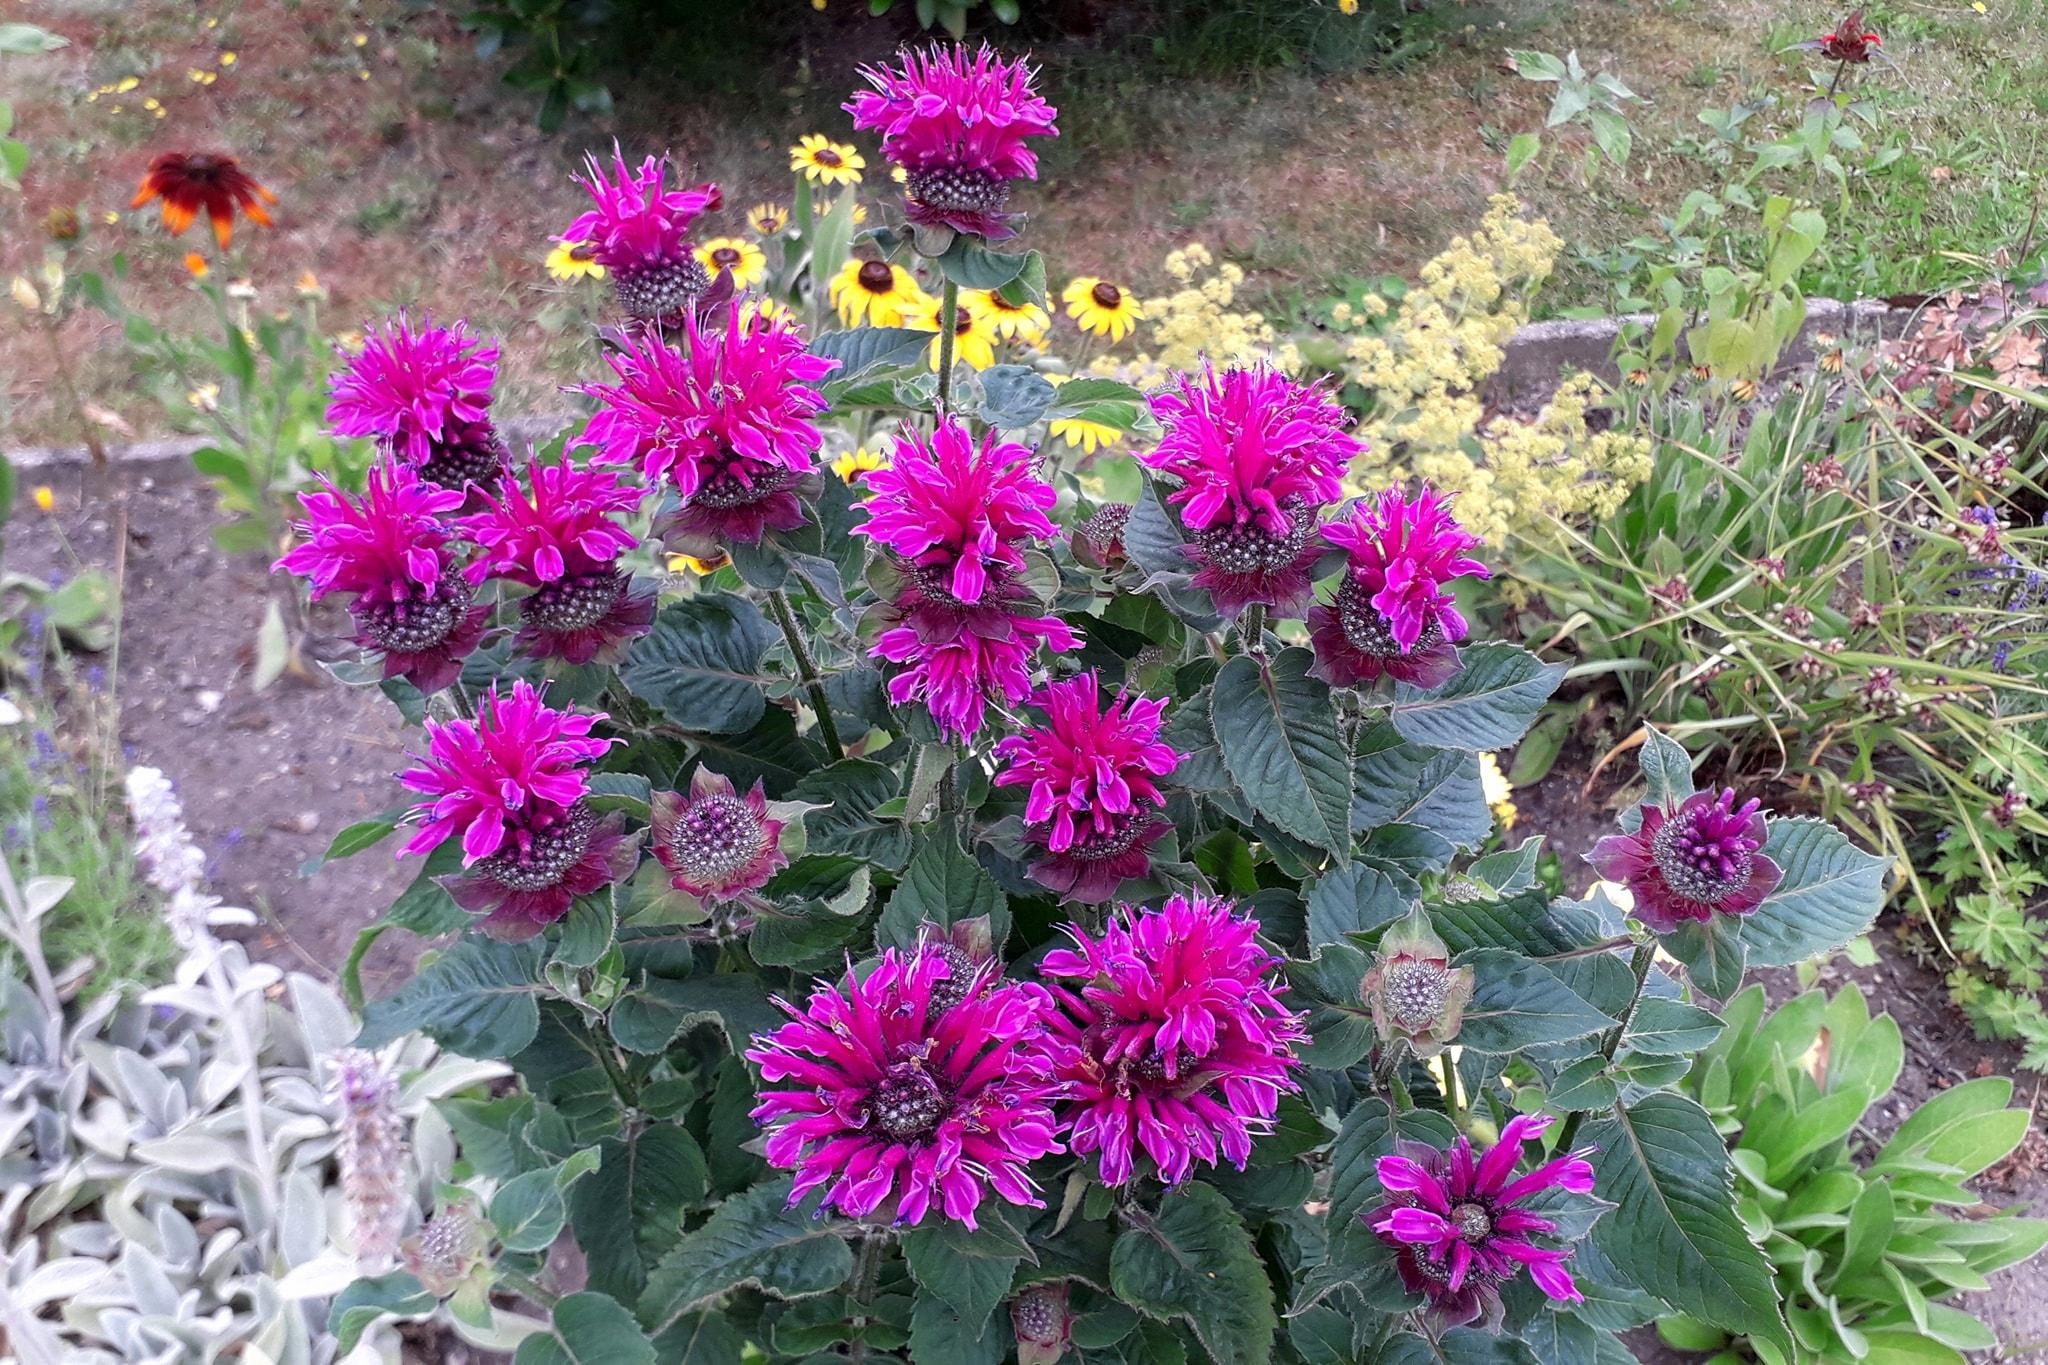 Blumendeko im eigenen Garten, was braucht es mehr? #outdoorweek #blumendeko